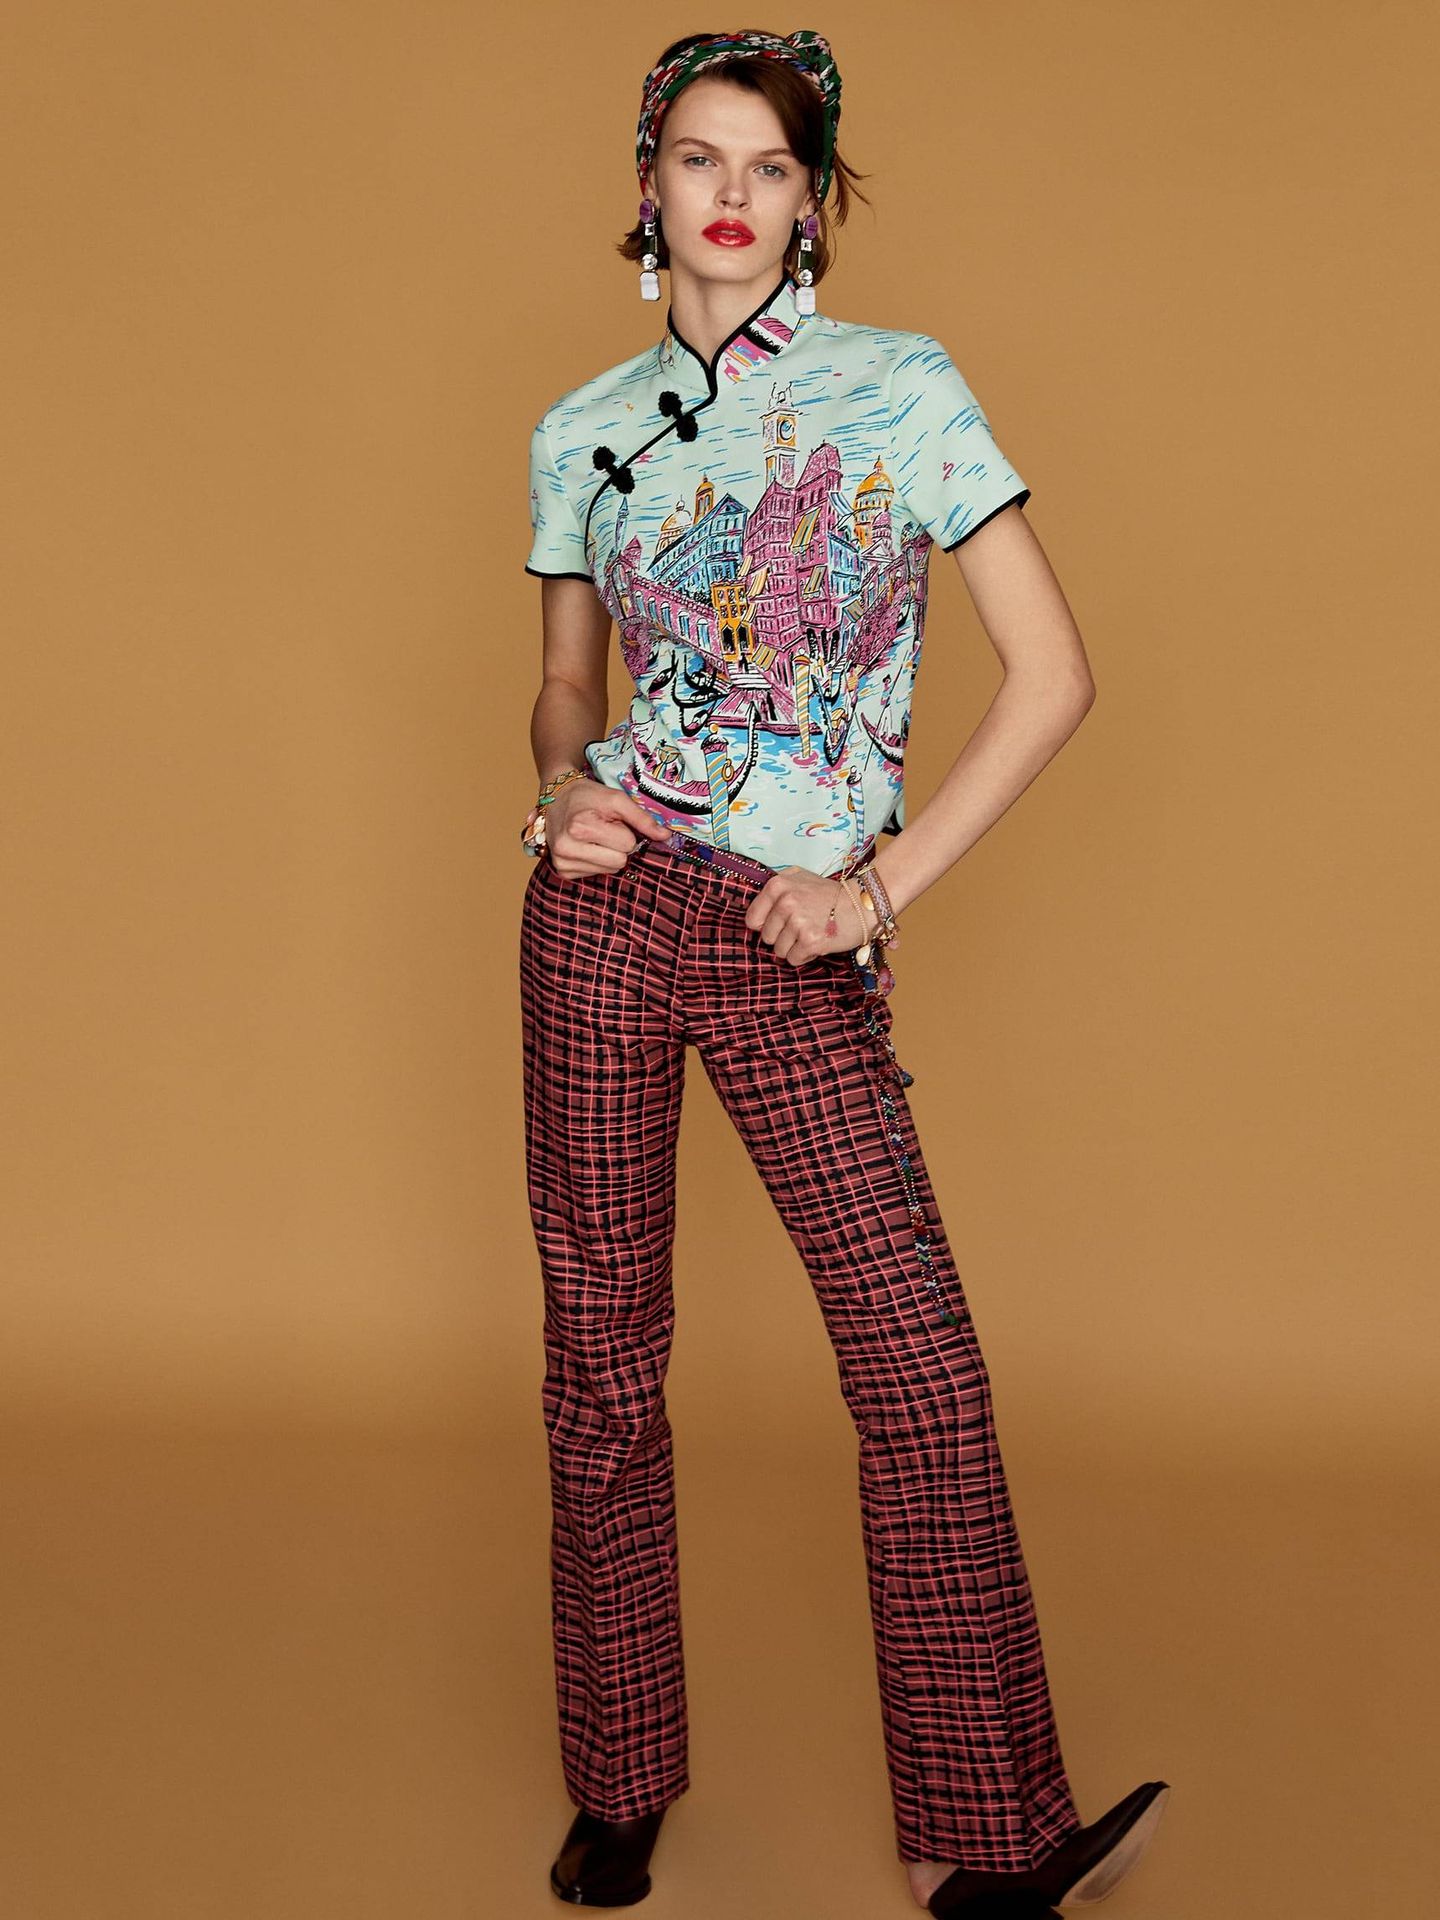 Este es el pantalón que puedes comprar en la tienda online de Zara. (Zara)